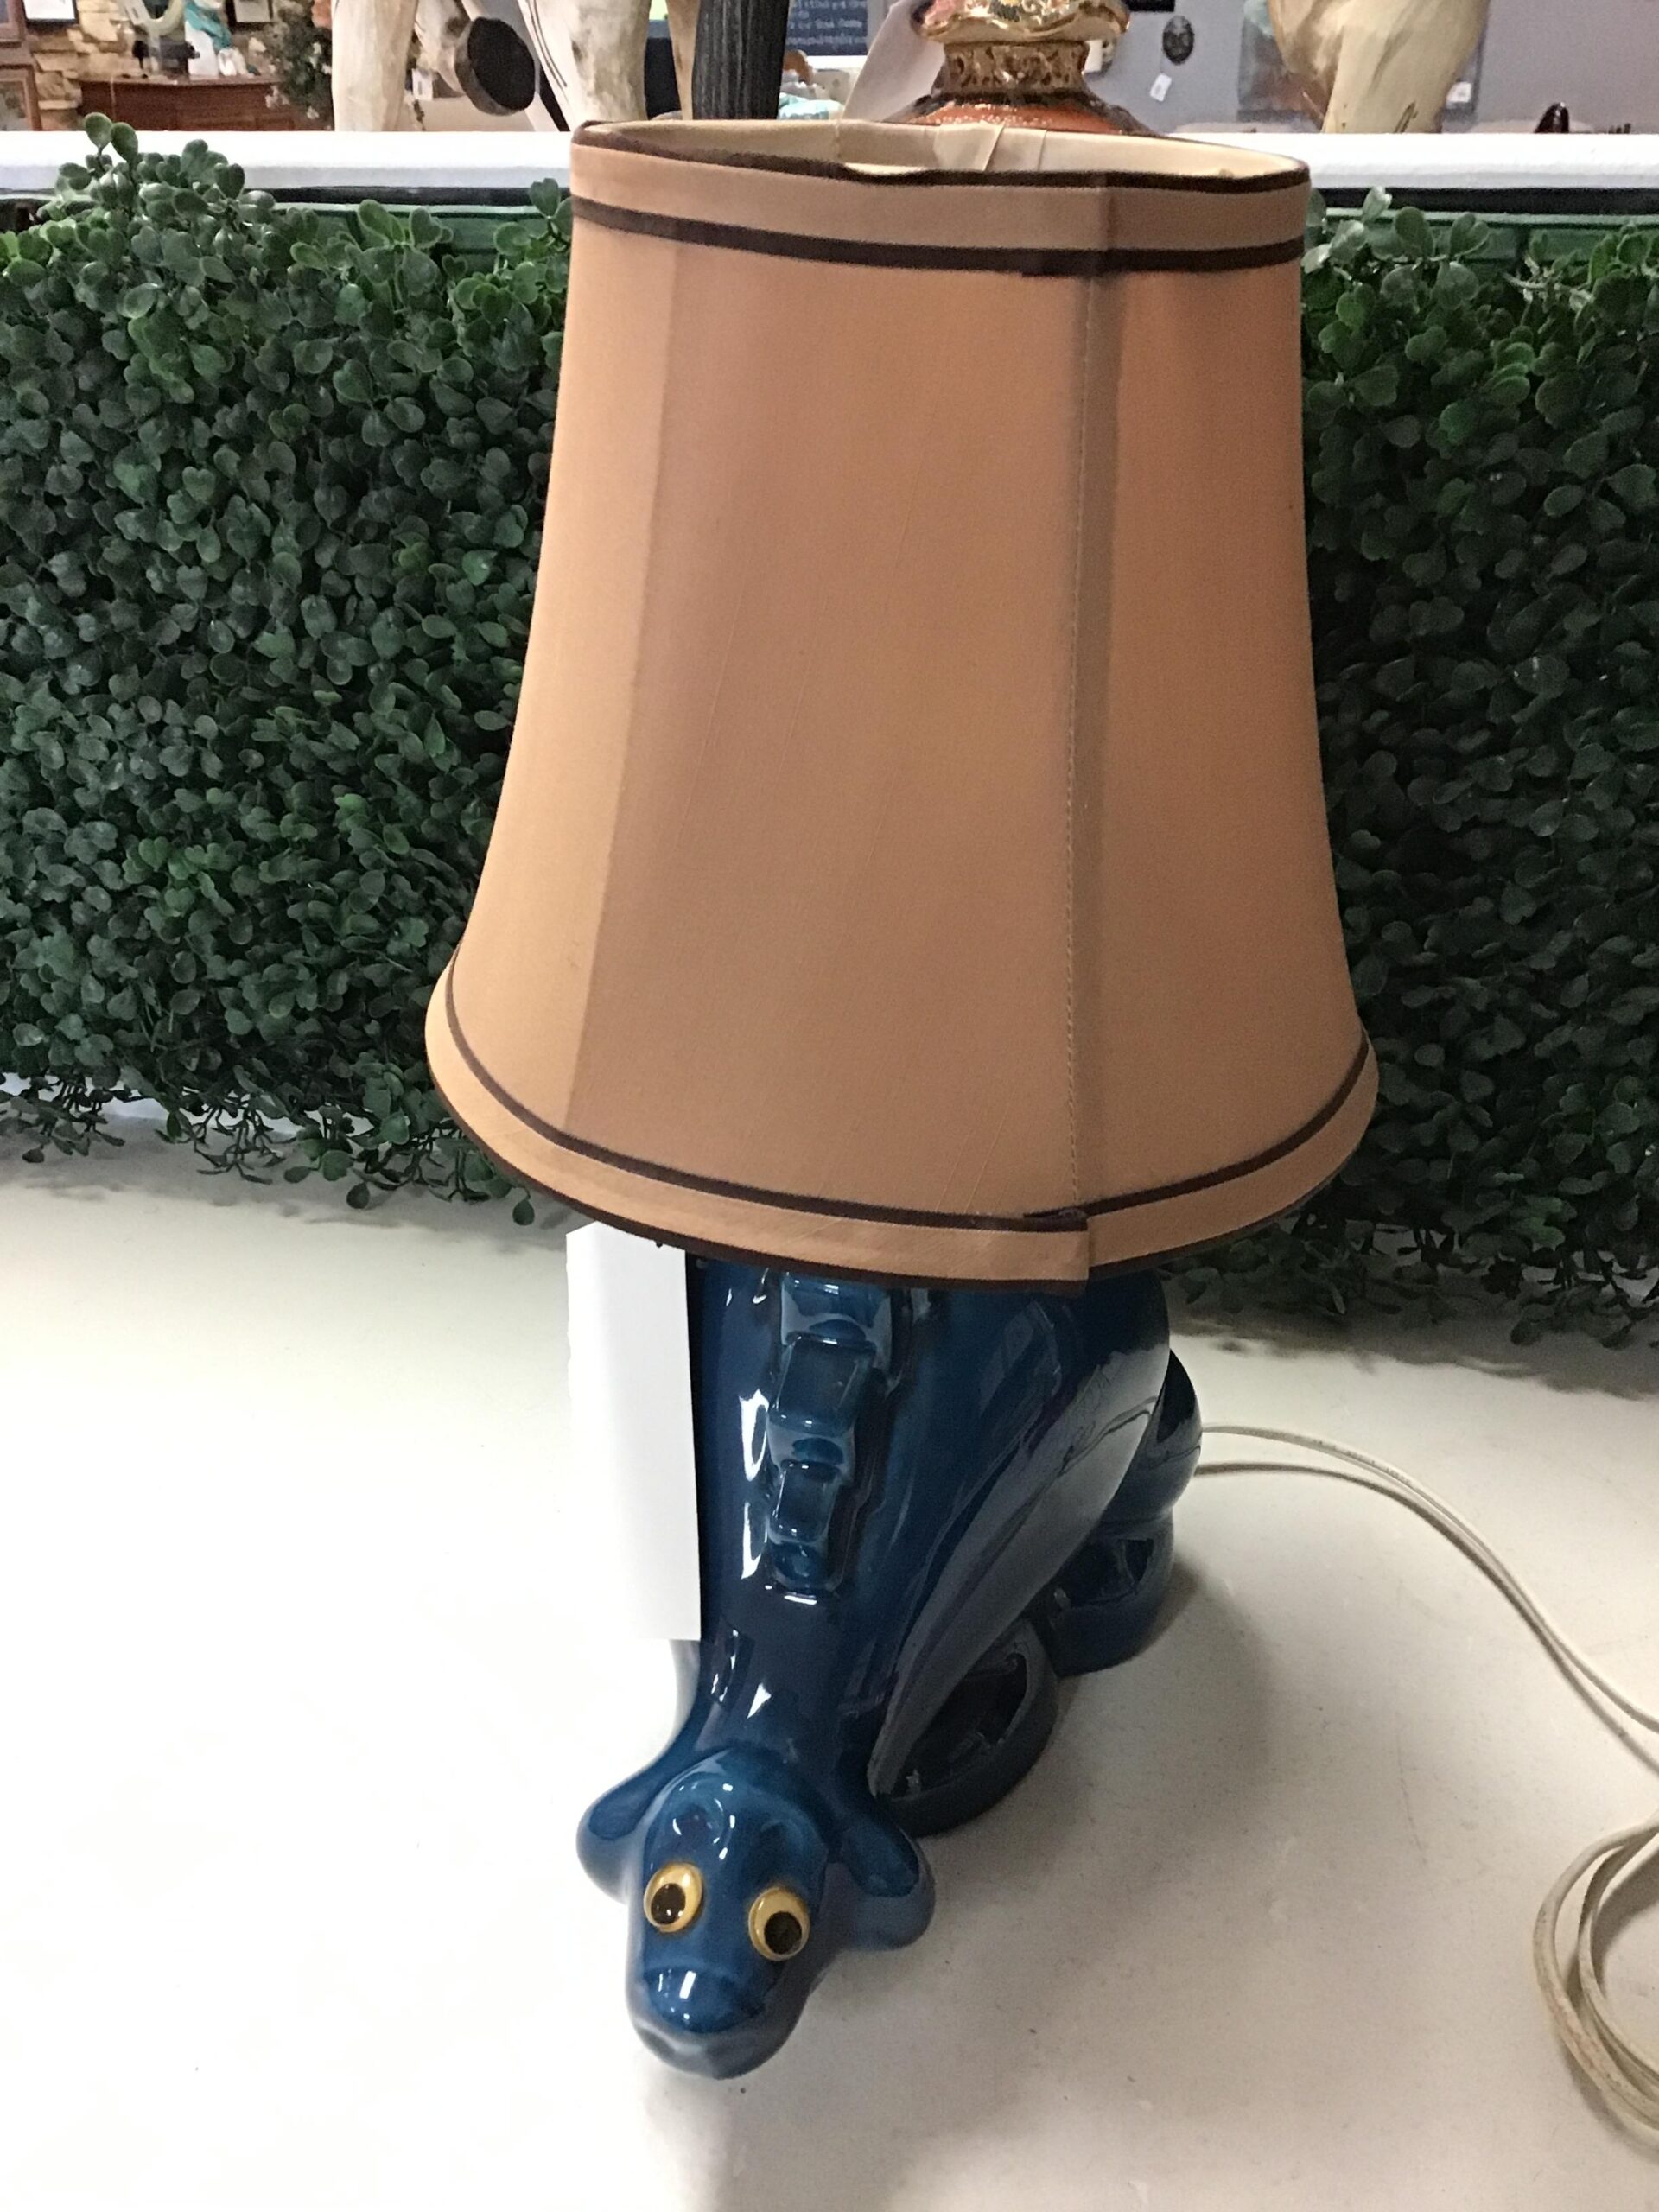 DINOSAUR LAMP